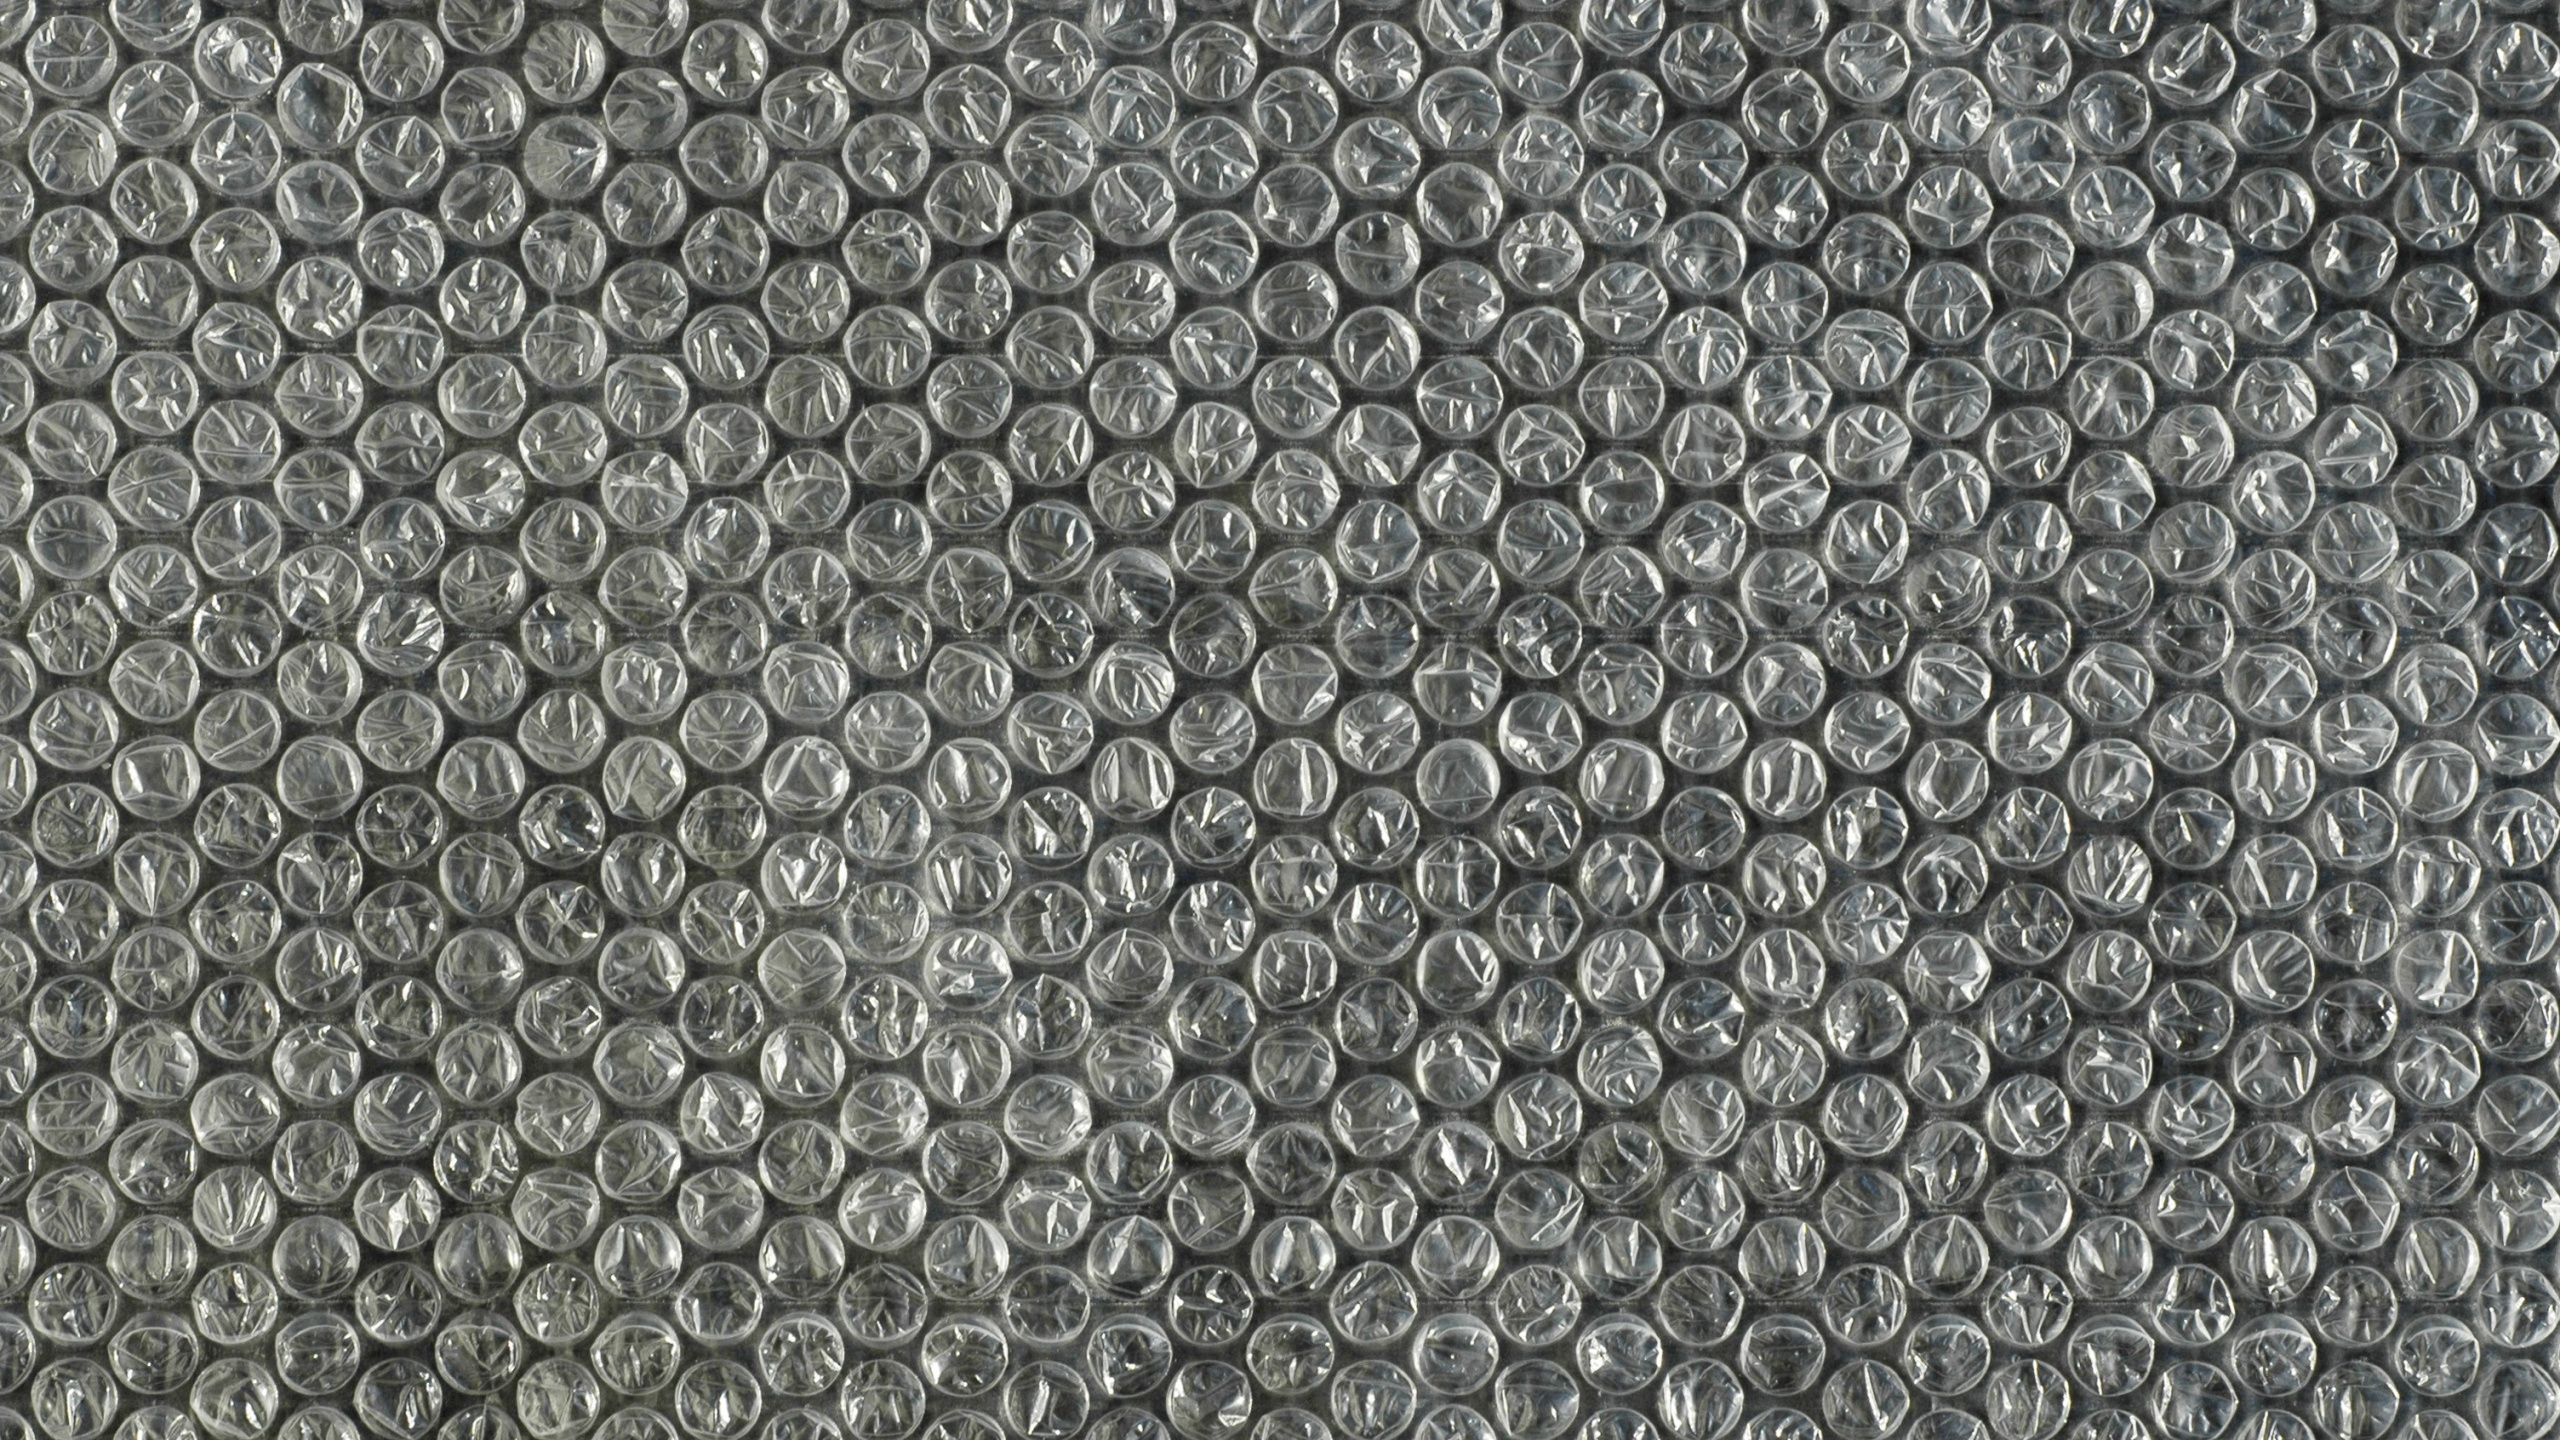 Carreaux de Céramique Noir et Blanc. Wallpaper in 2560x1440 Resolution